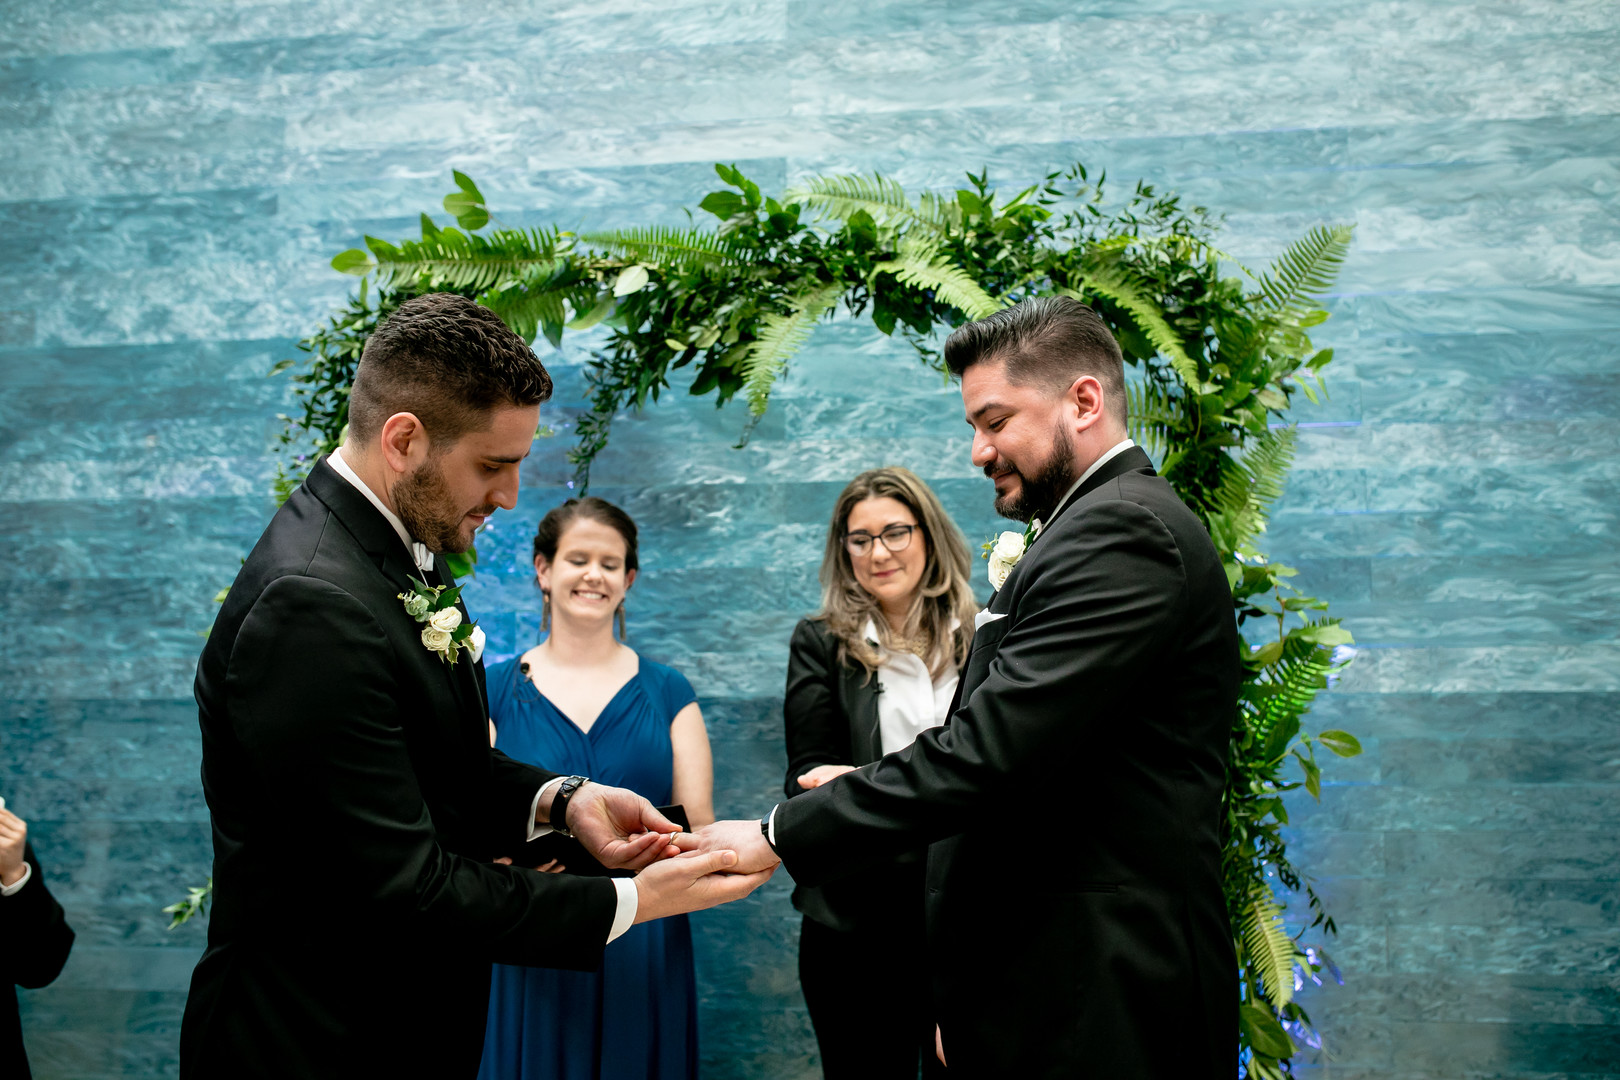 Black tie wedding at the Blanton Museum in Austin, Texas LGBTQ+ weddings two grooms luxury elegant vows